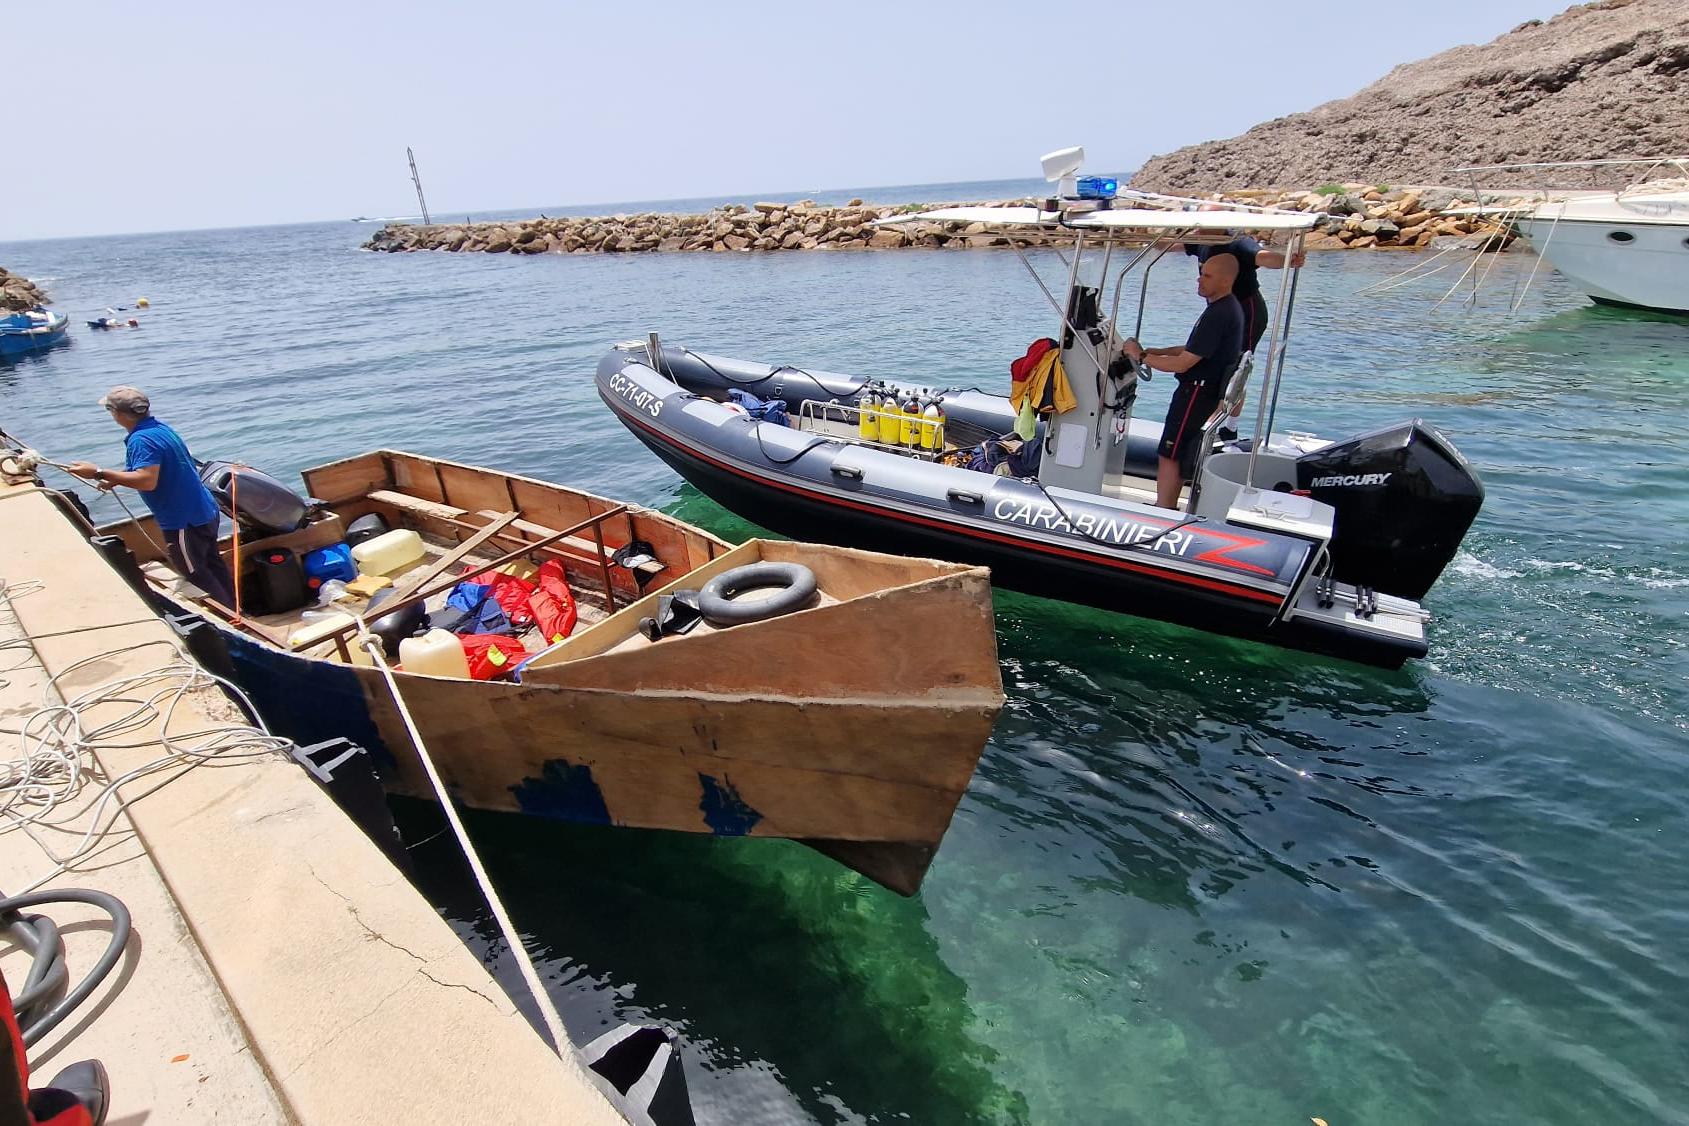 Pula, sequestrato barchino utilizzato per la traversata dei migranti